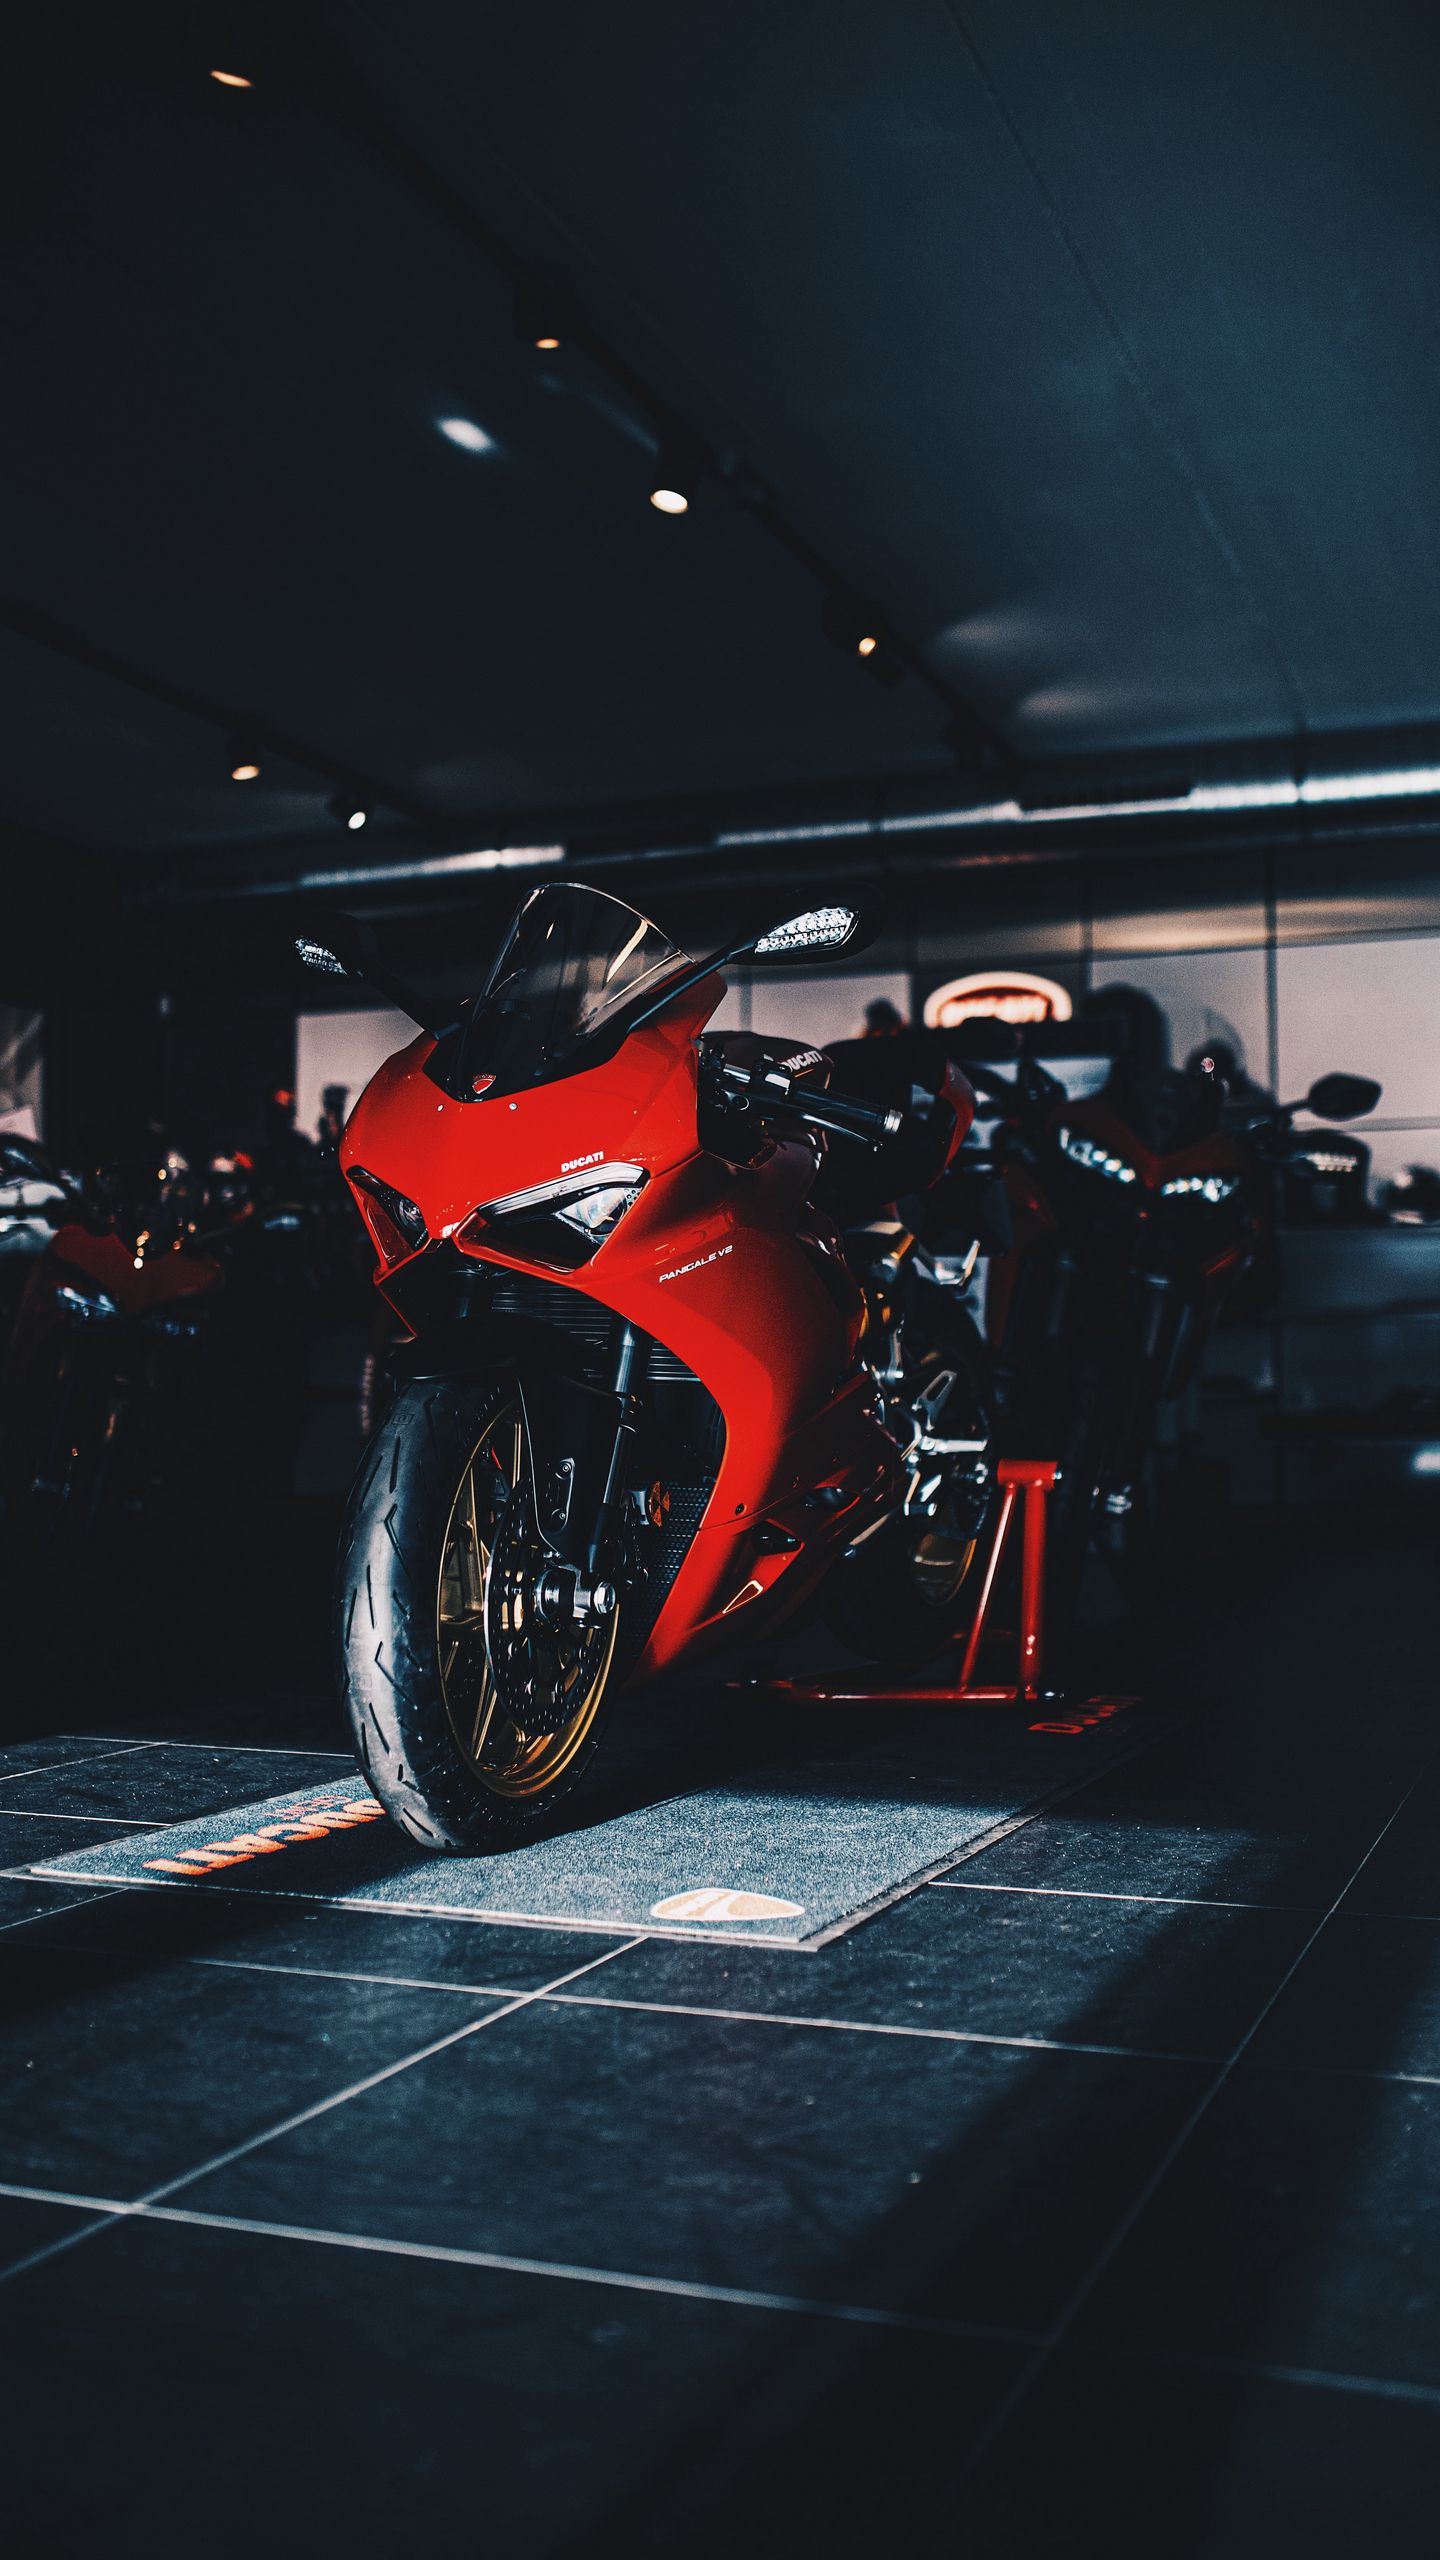 43+] Ducati Wallpaper Downloads - WallpaperSafari